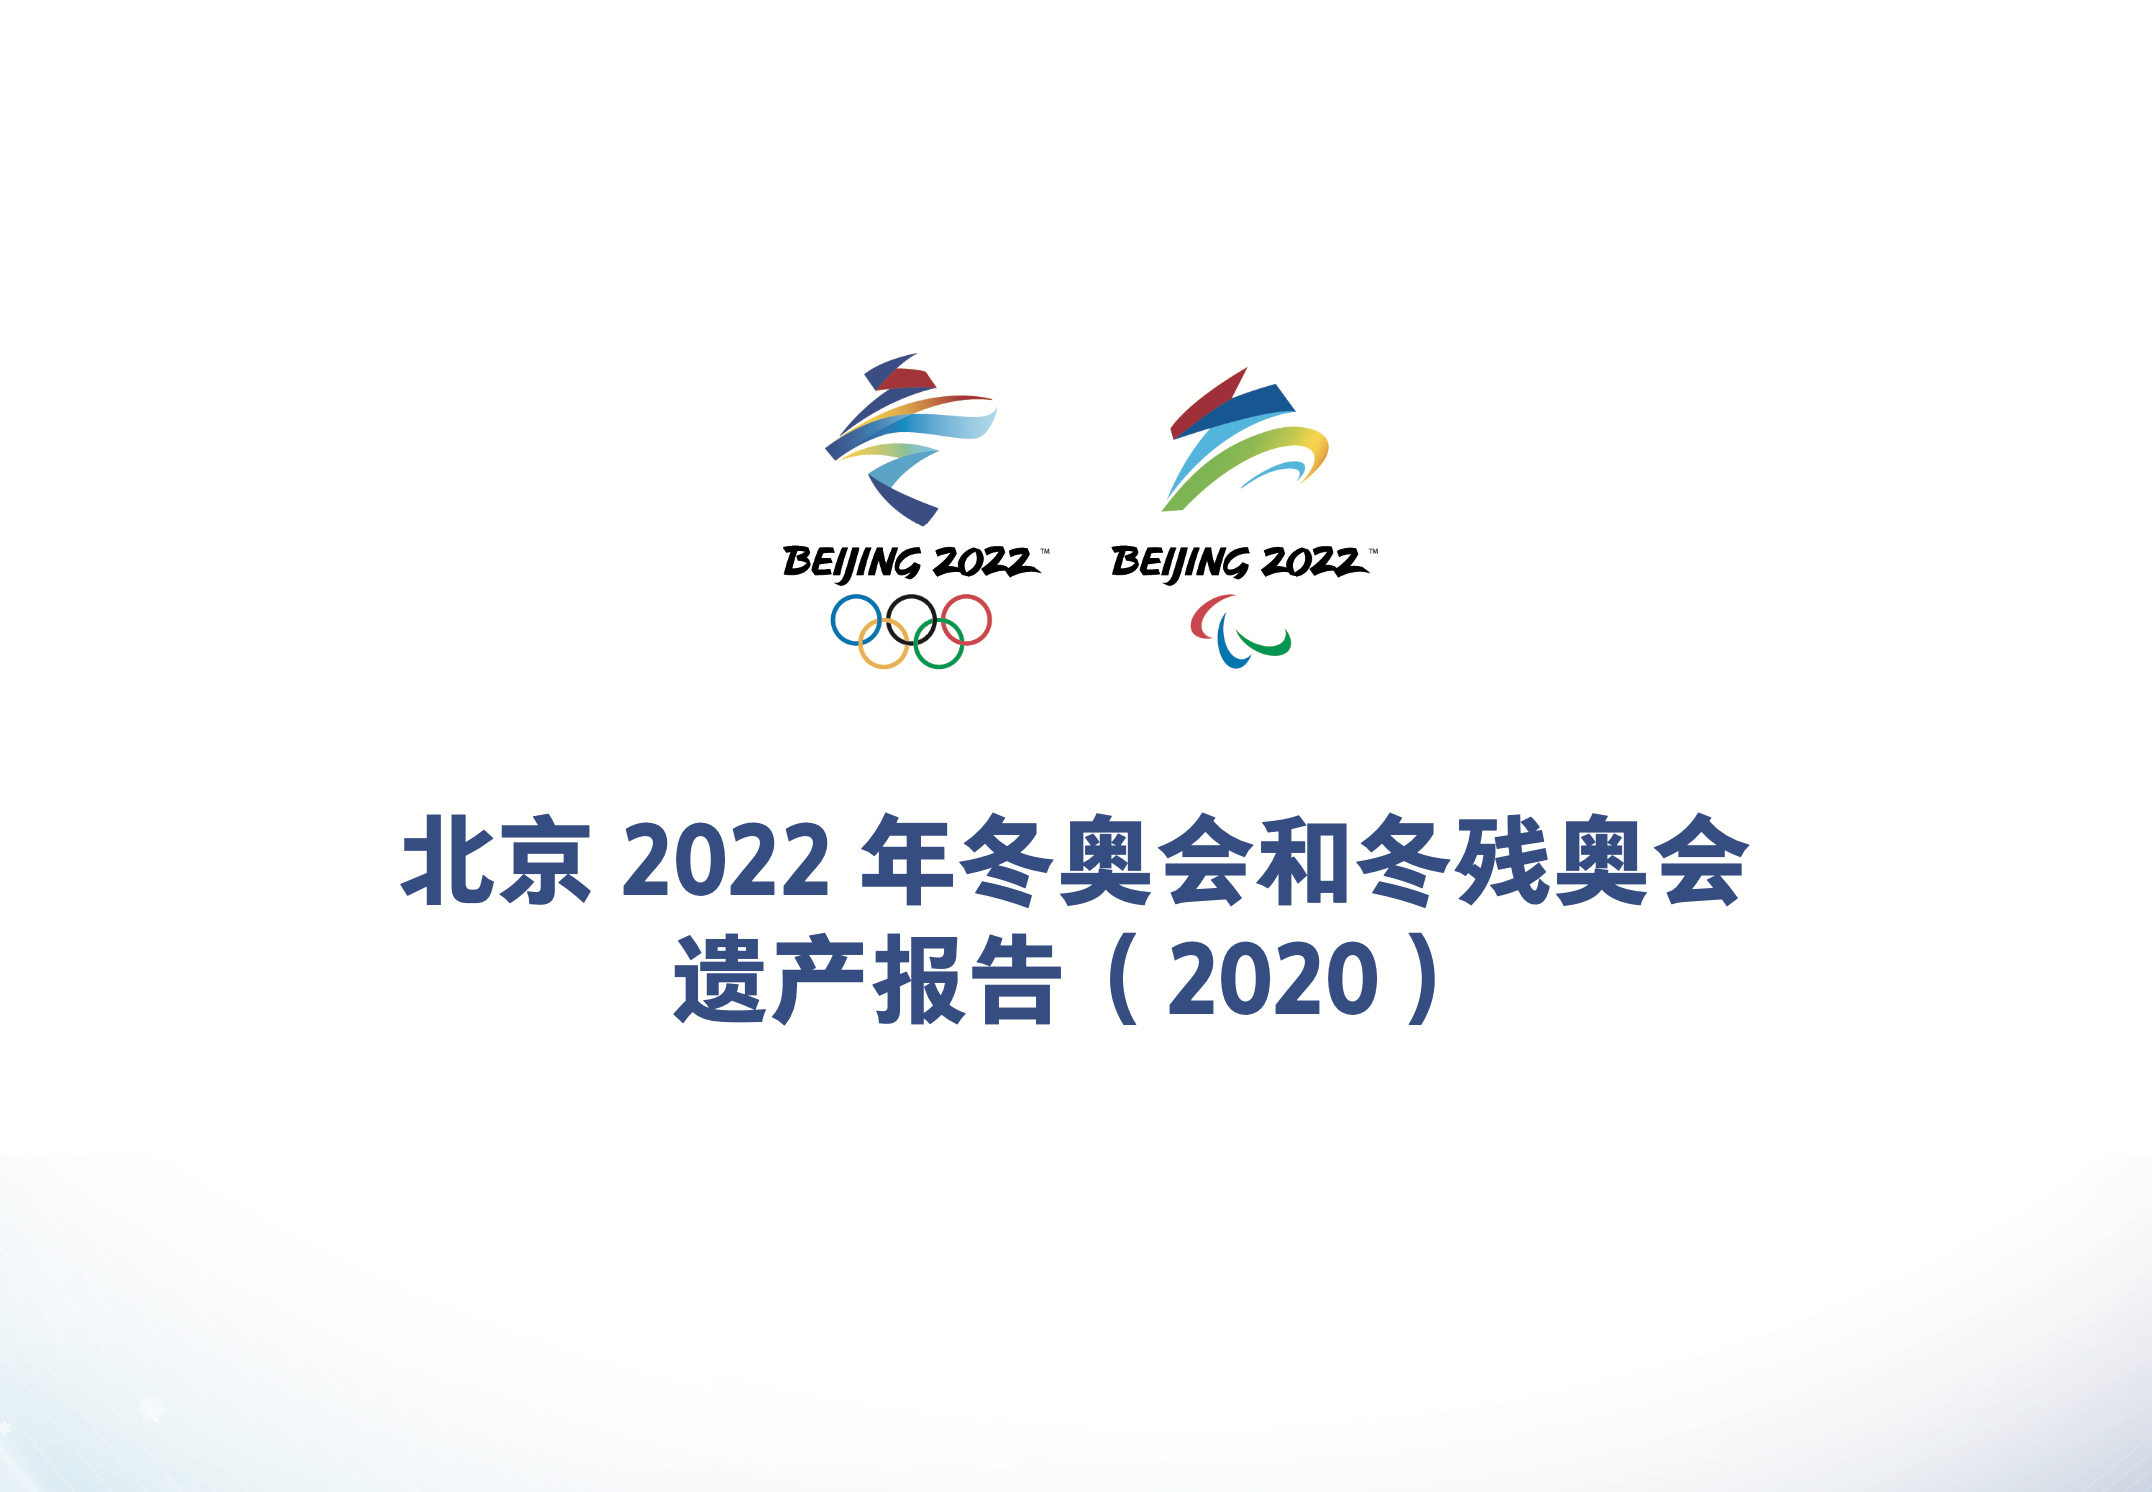 北京冬奥标志话题图片